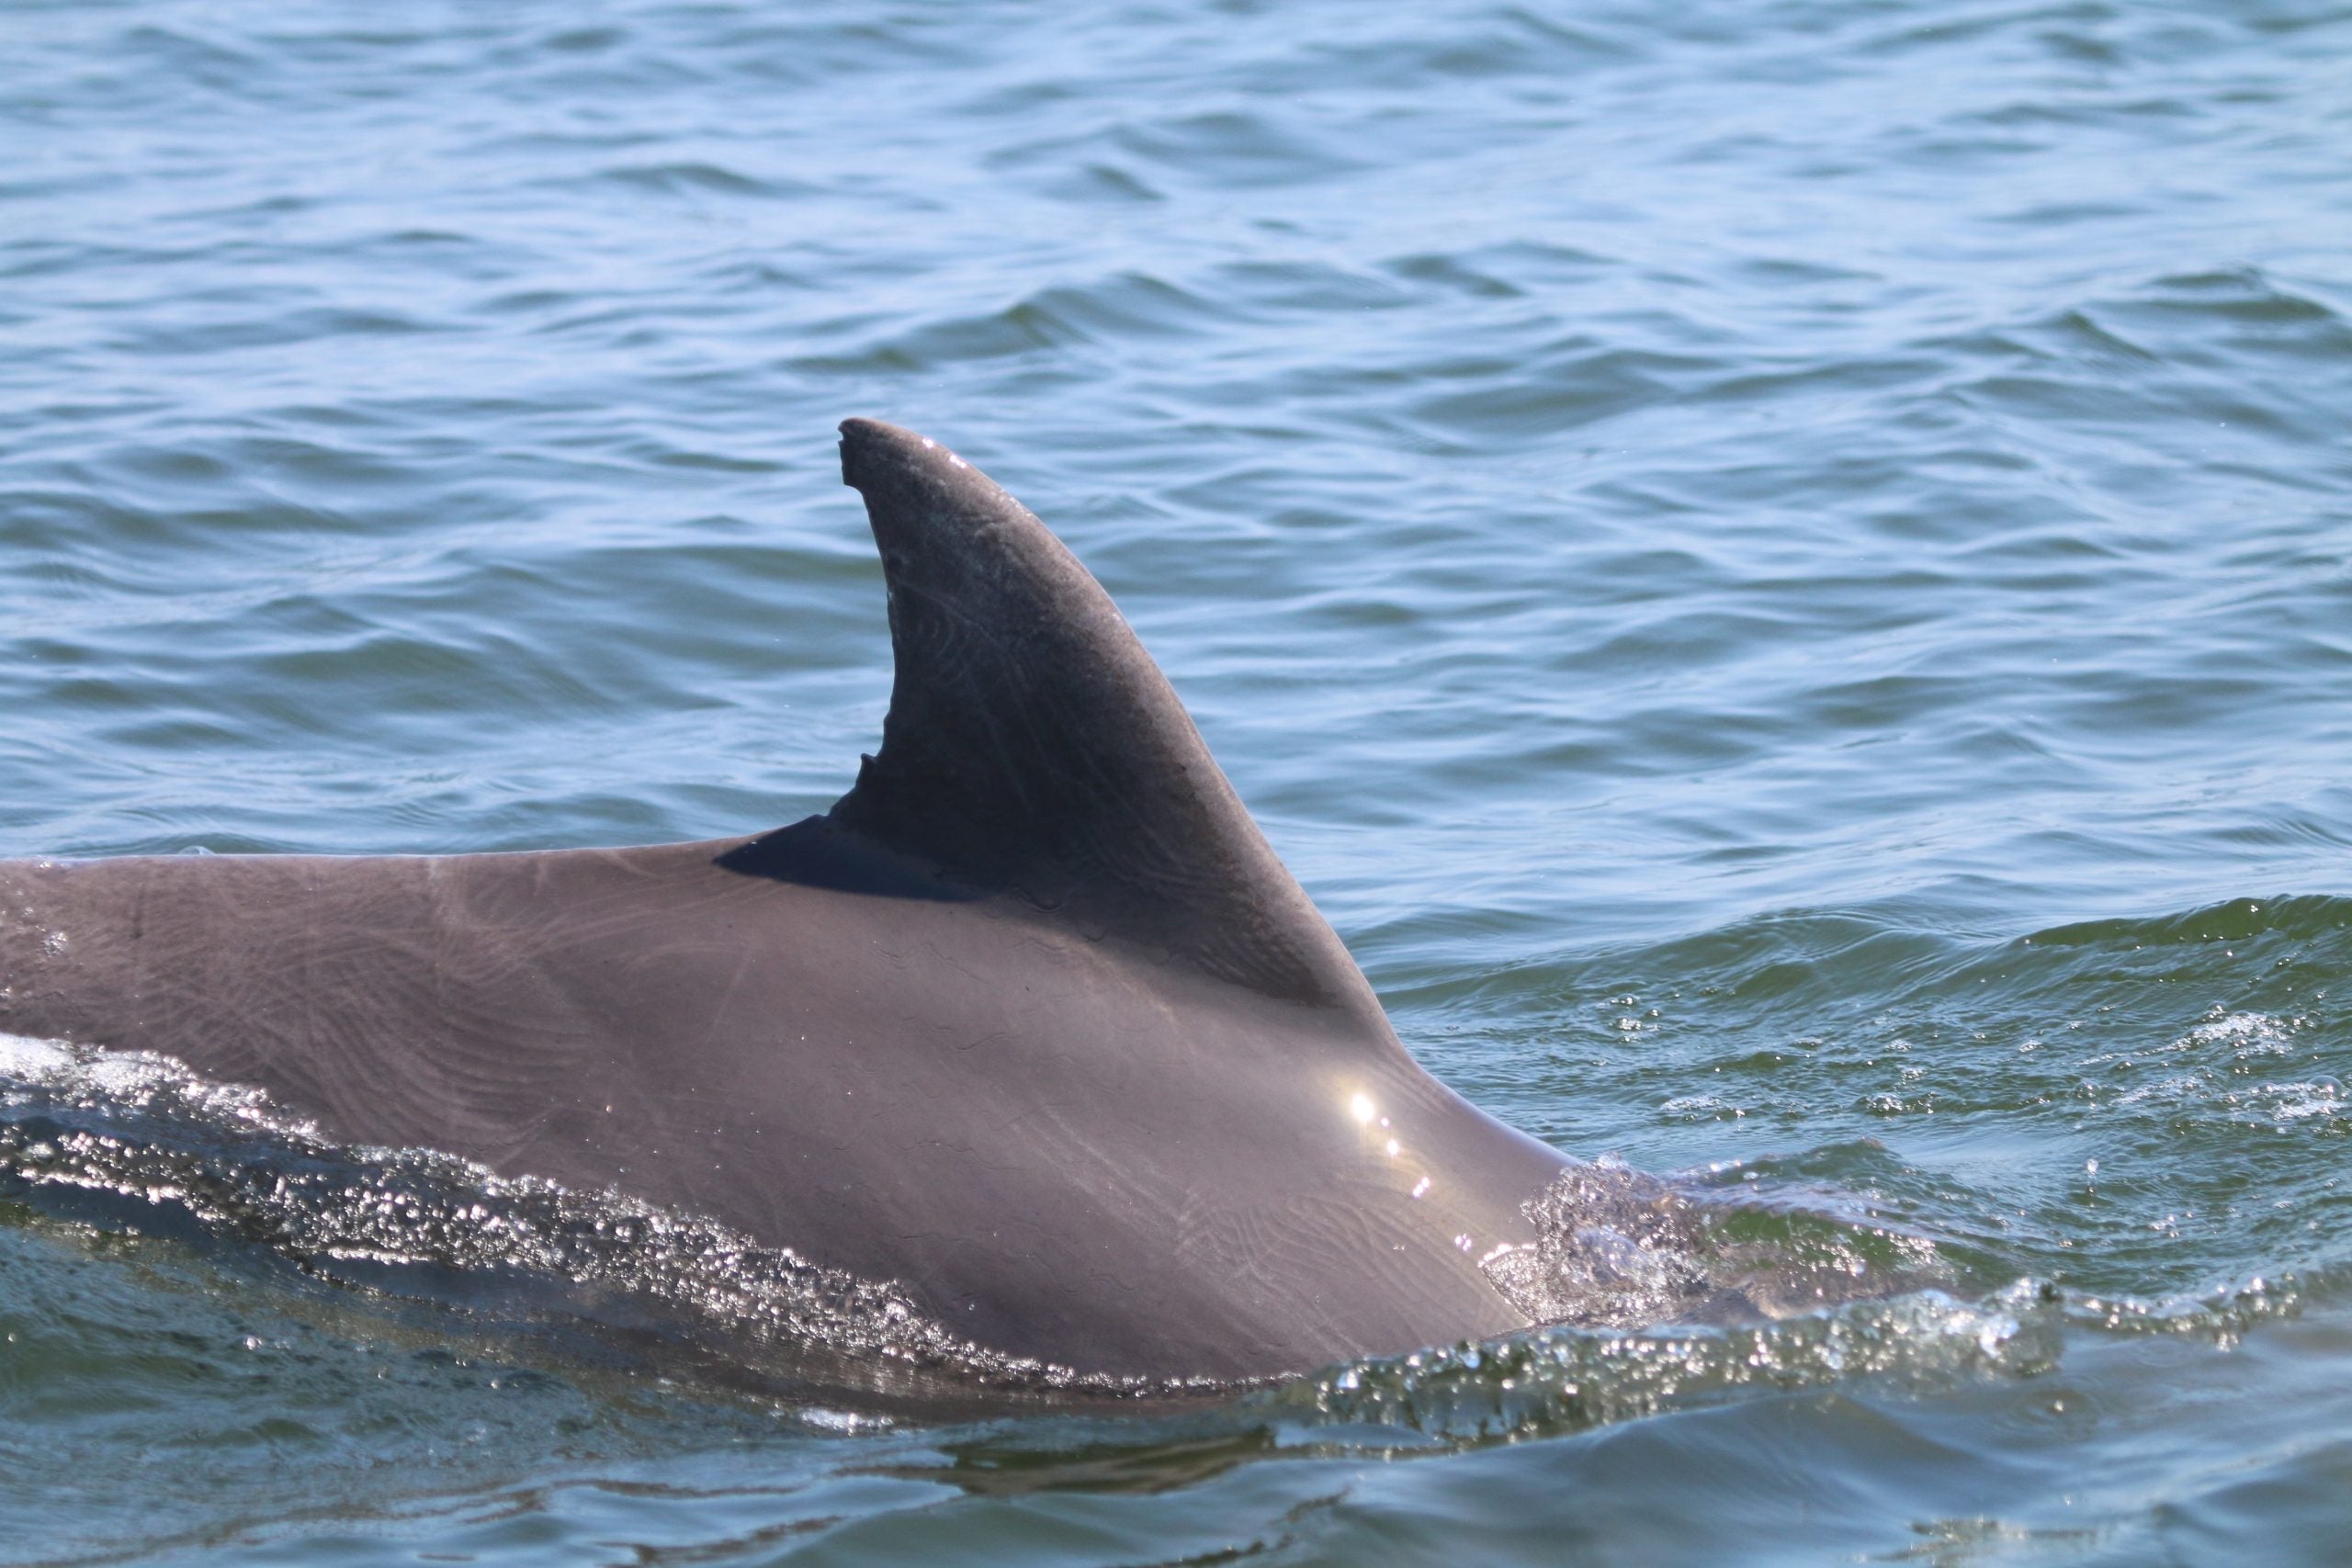 A dolphin's dorsal fin